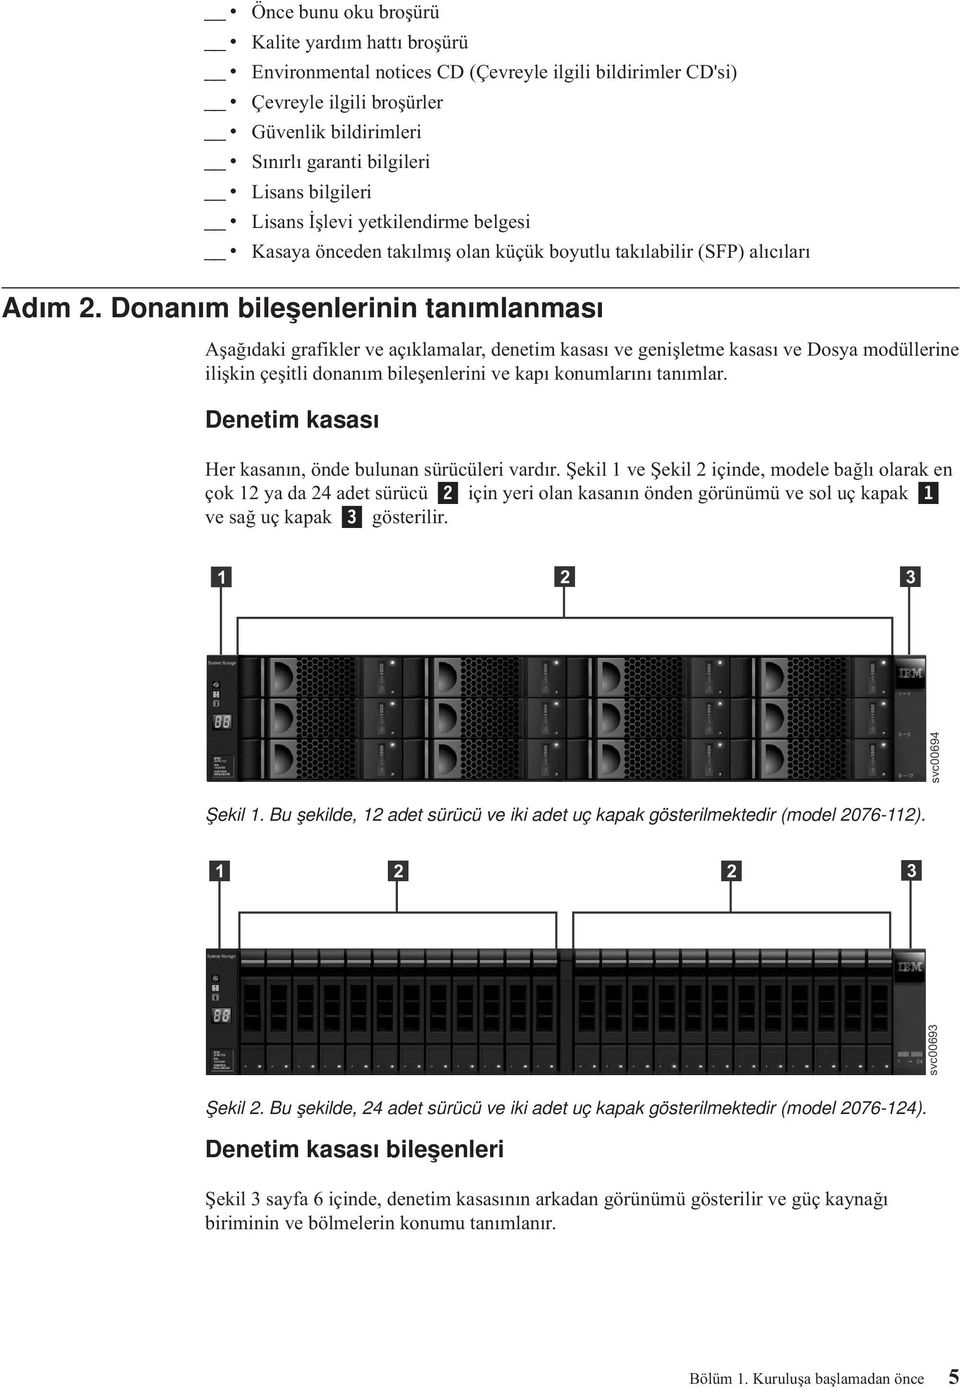 Donanım bileşenlerinin tanımlanması Aşağıdaki grafikler e açıklamalar, denetim kasası e genişletme kasası e Dosya modüllerine ilişkin çeşitli donanım bileşenlerini e kapı konumlarını tanımlar.